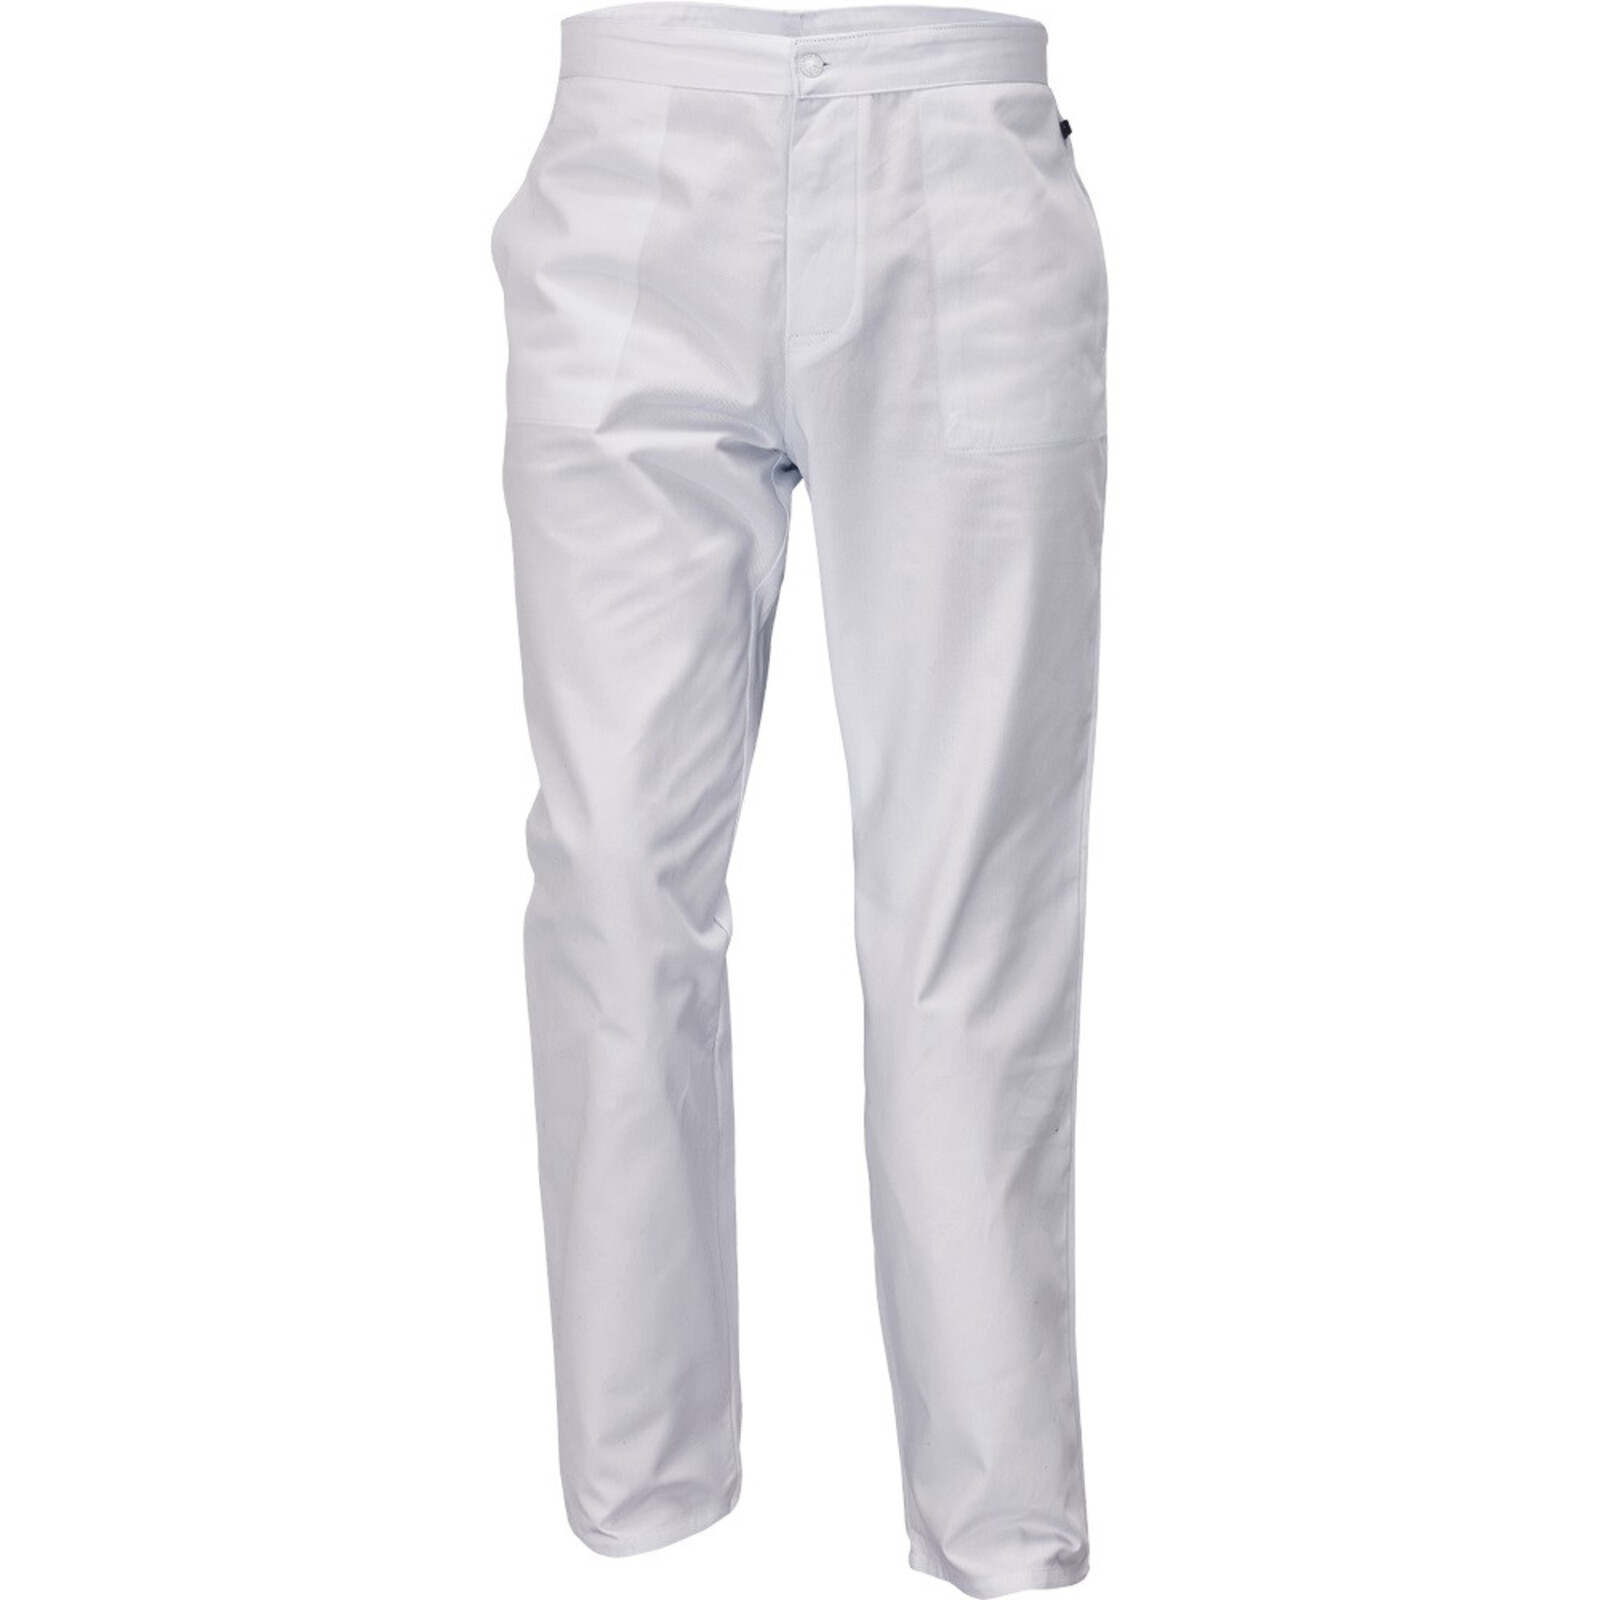 Pánske biele nohavice Apus Man - veľkosť: 46